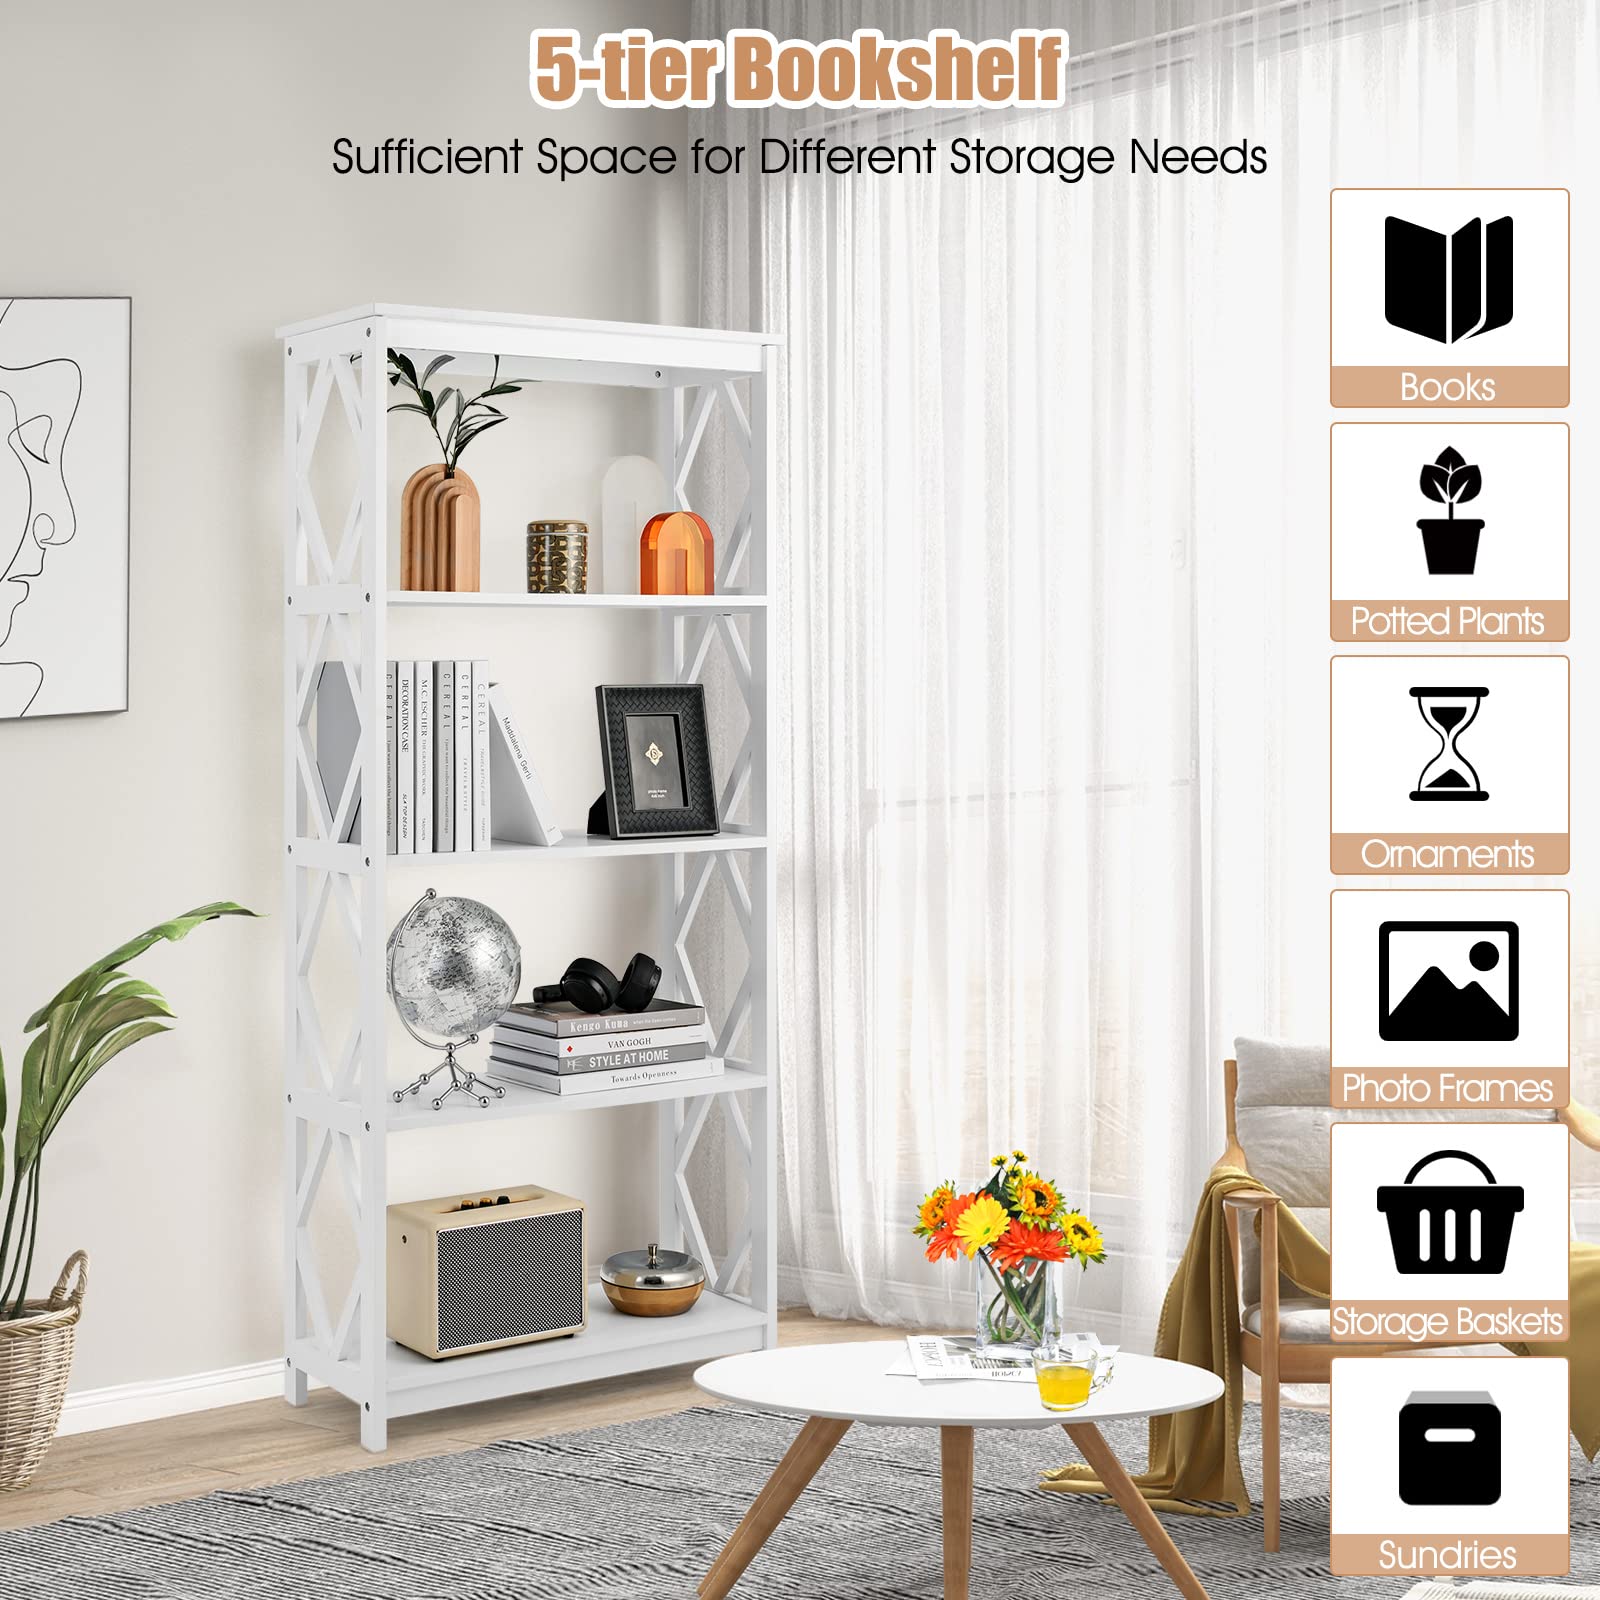 Giantex 5-Tier 61" Tall Wooden Bookshelf - Modern Freestanding Open Shelving Storage Display Shelf